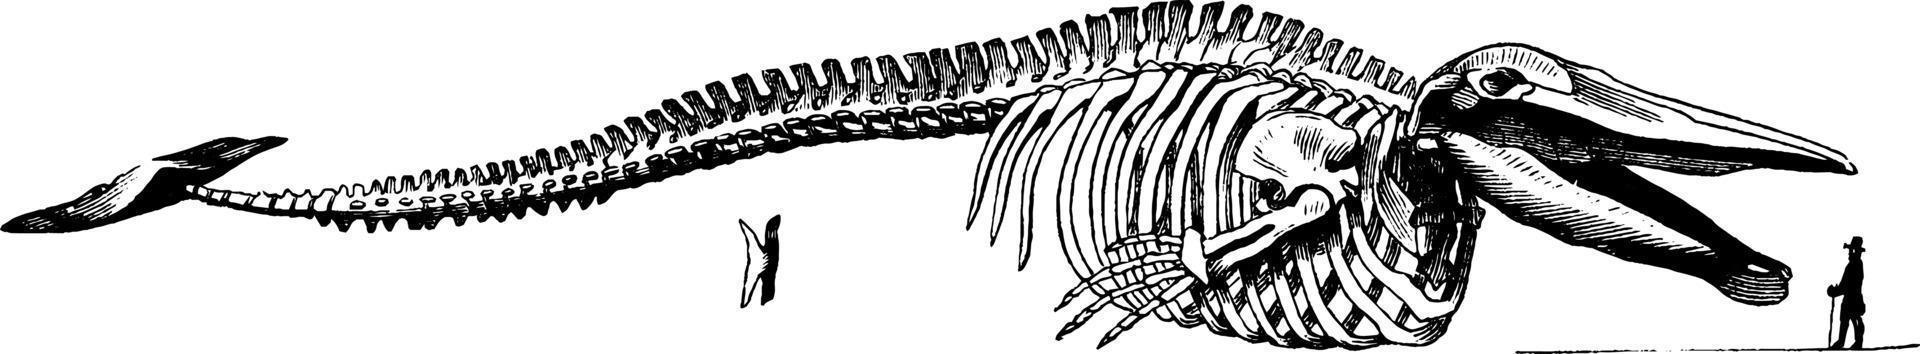 esqueleto de ballena, ilustración vintage. vector